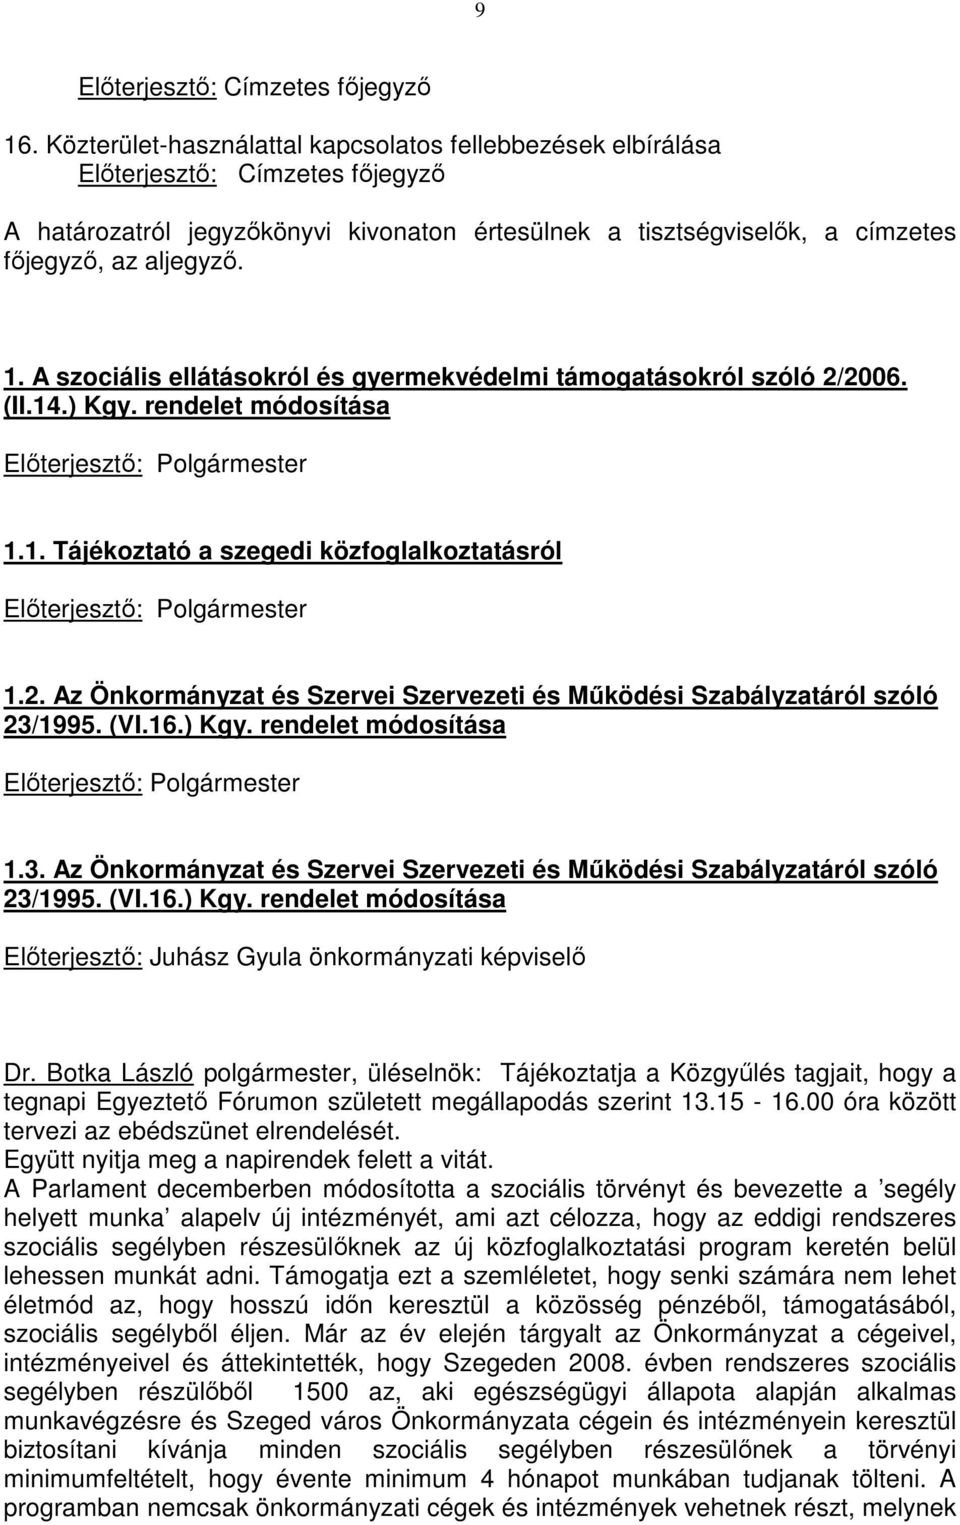 A szociális ellátásokról és gyermekvédelmi támogatásokról szóló 2/2006. (II.14.) Kgy. rendelet módosítása Elıterjesztı: Polgármester 1.1. Tájékoztató a szegedi közfoglalkoztatásról Elıterjesztı: Polgármester 1.